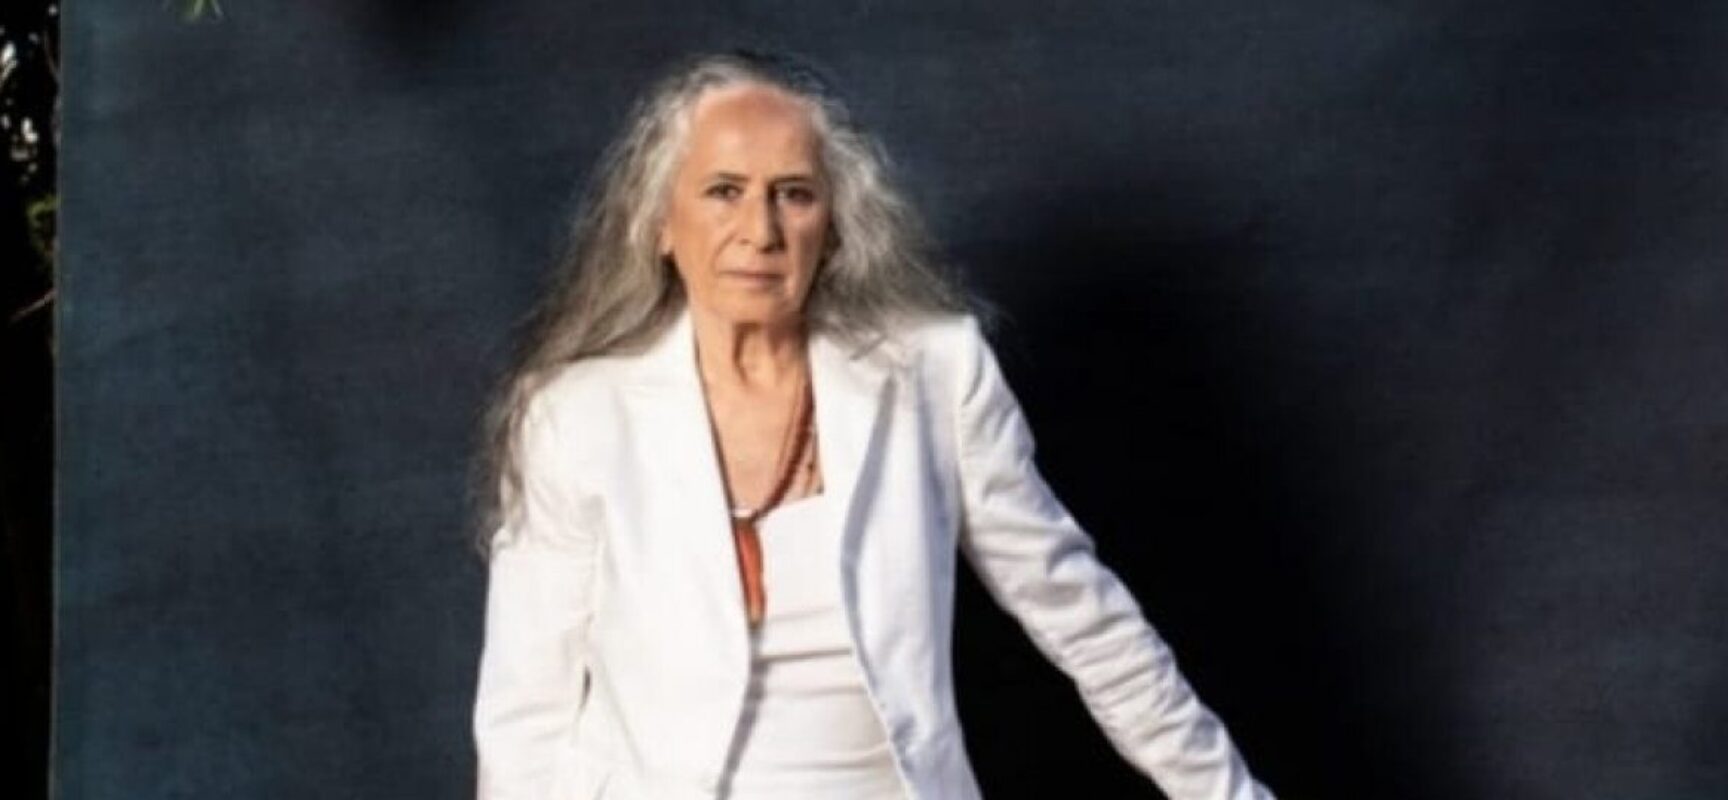 Maria Bethânia faz 75 anos e anuncia nova música: ‘A flor encarnada’